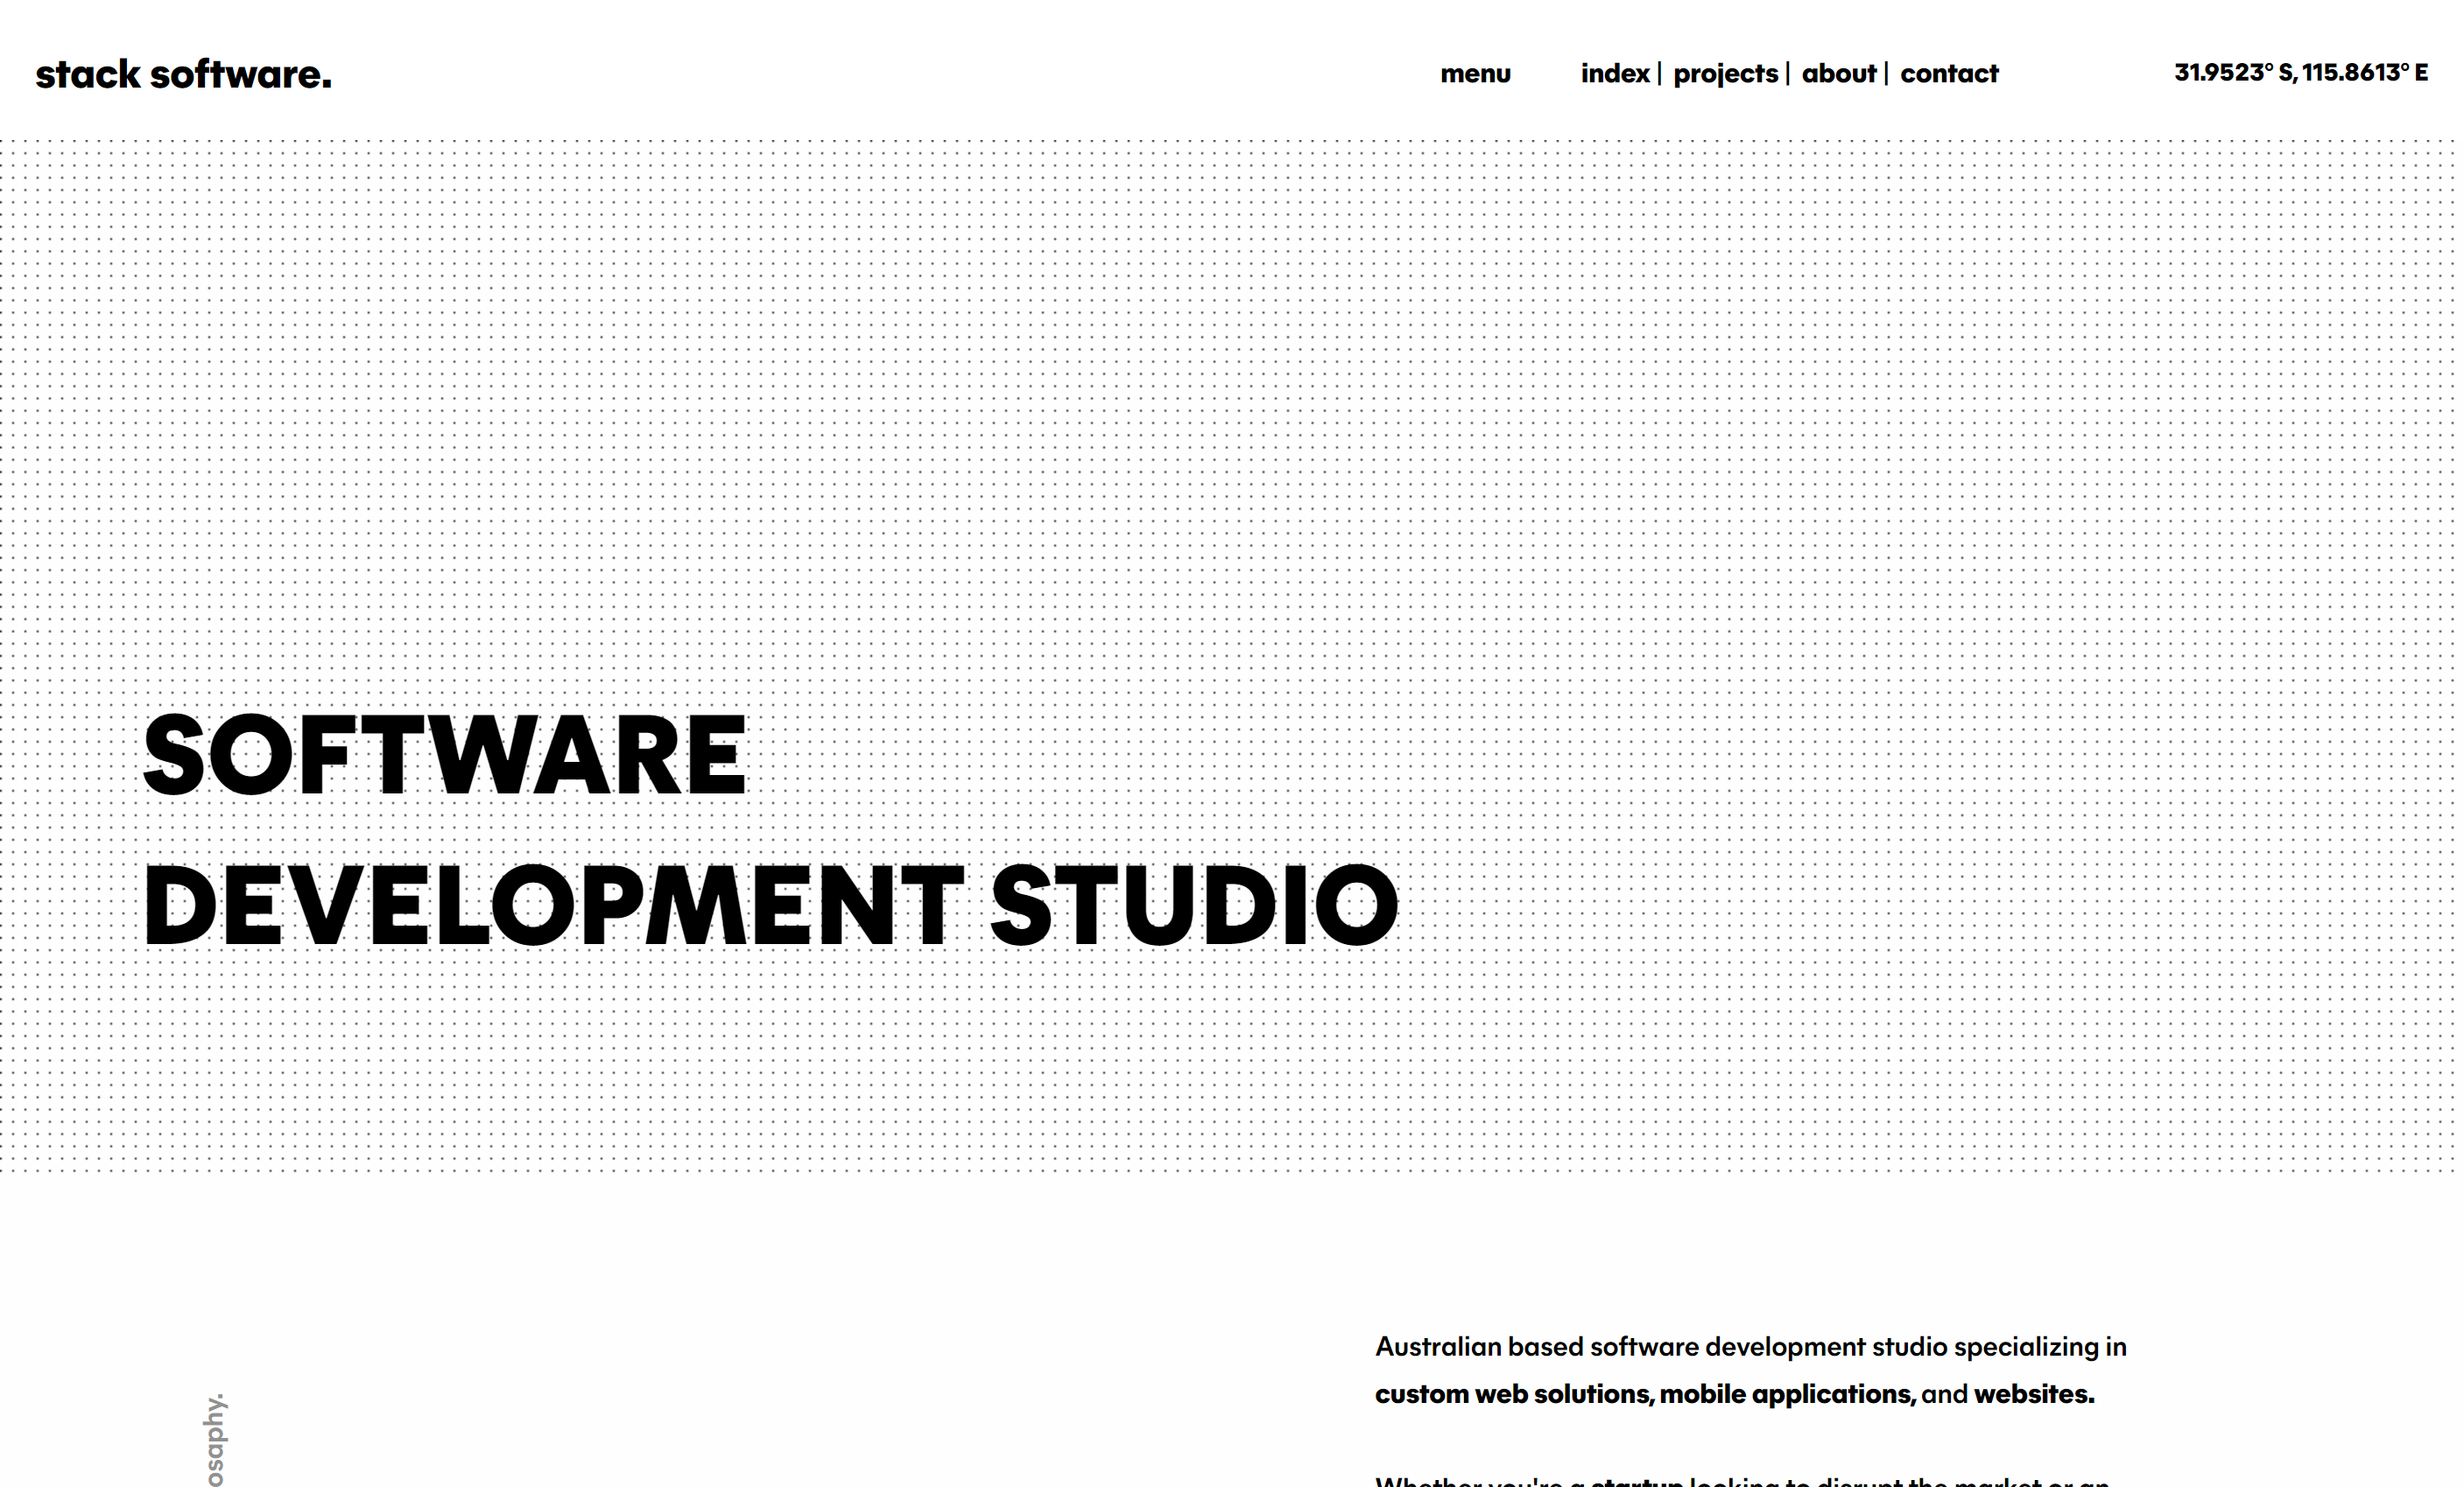 Stack Software — Website